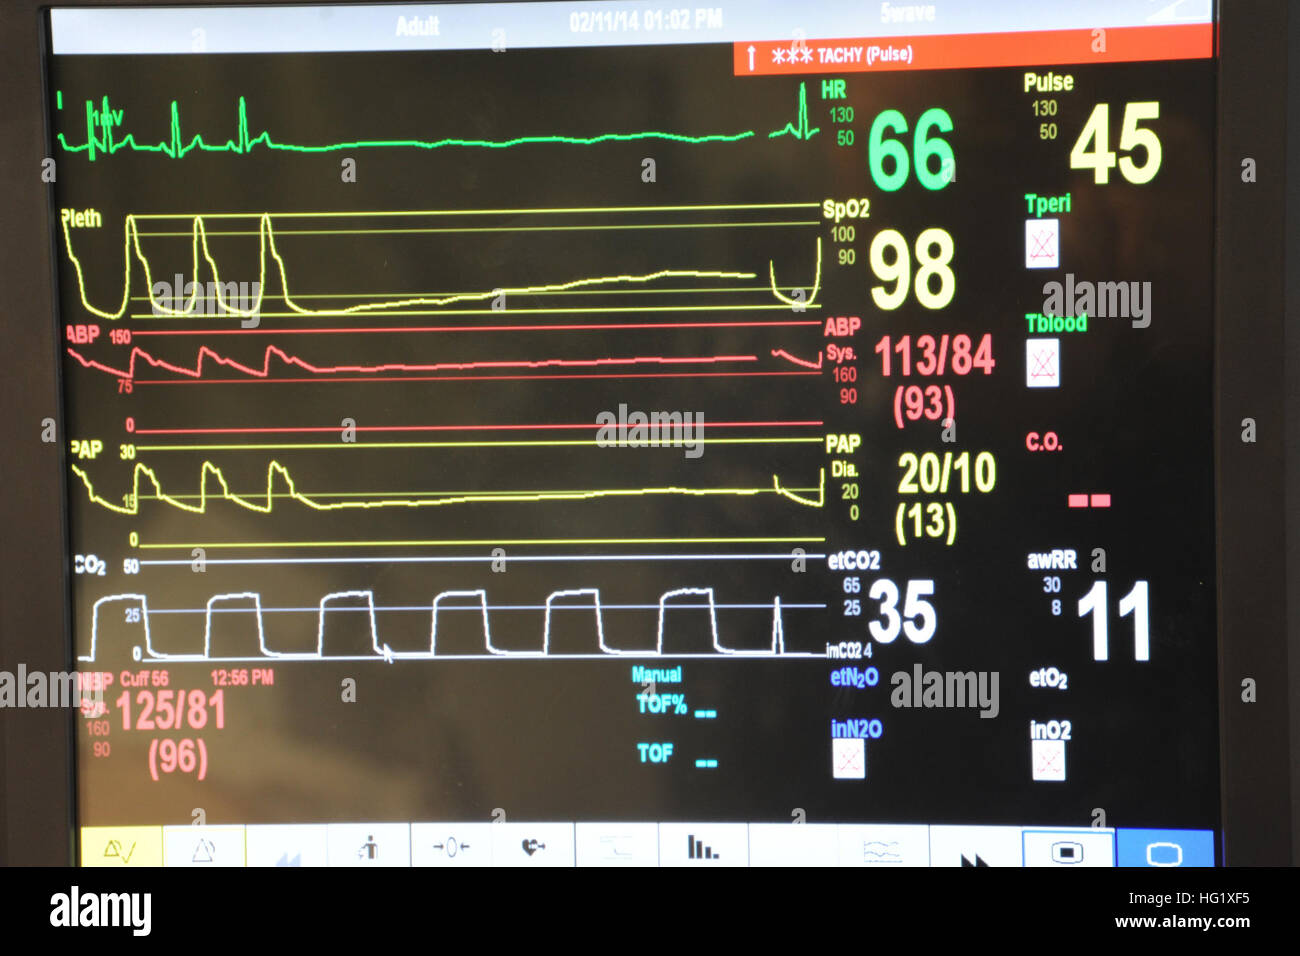 Un moniteur de paramètres vitaux affiche la fréquence cardiaque, la  saturation en oxygène et de la pression artérielle sur la simulation d'un  patient à l'hôpital naval de Pensacola. Affichage du moniteur de